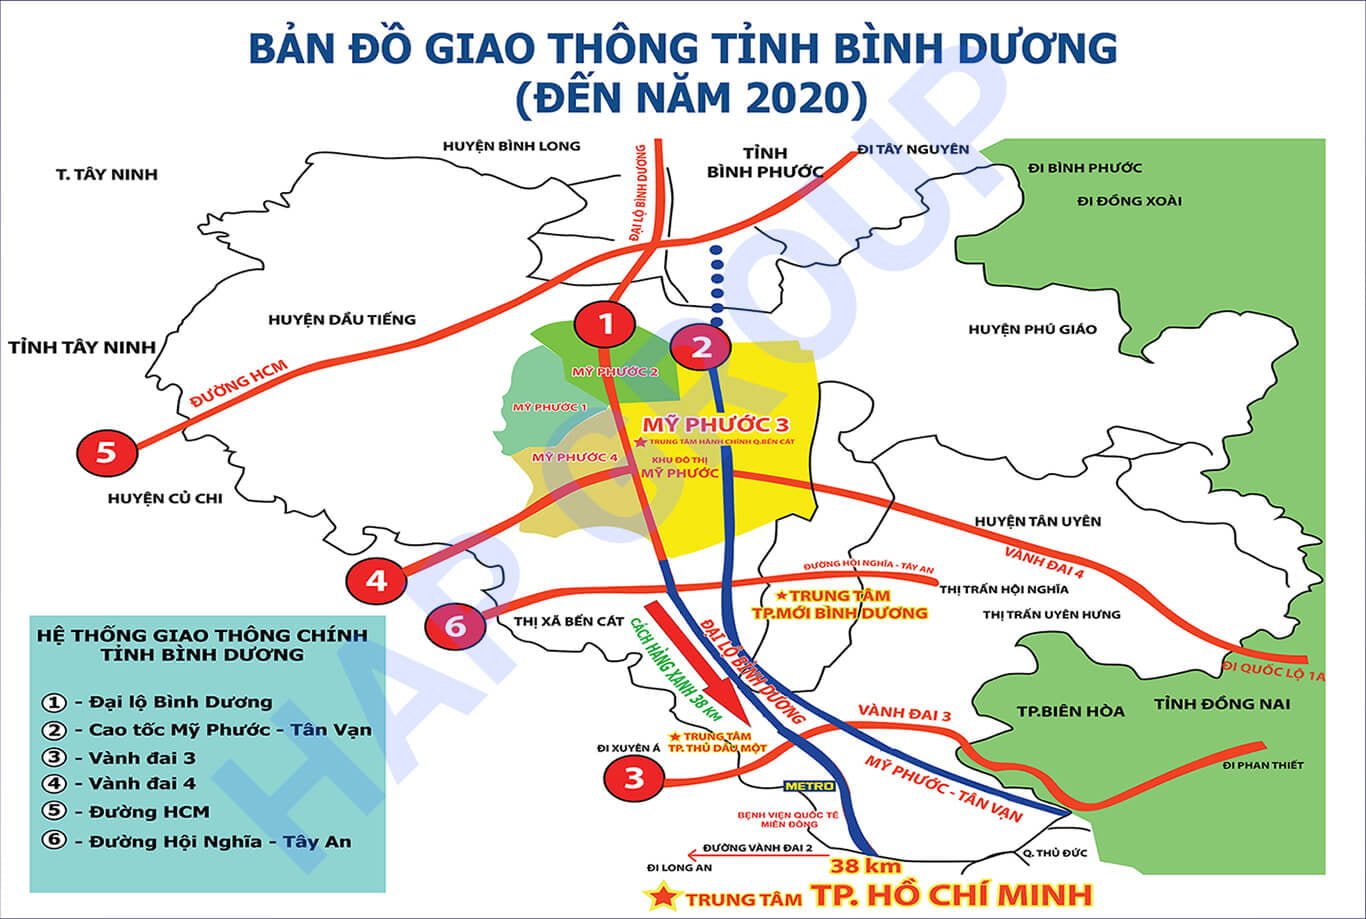 Ban do Giao thong Tinh Binh Duong - DỰ ÁN CĂN HỘ OPAL SKYLINE THUẬN AN BÌNH DƯƠNG